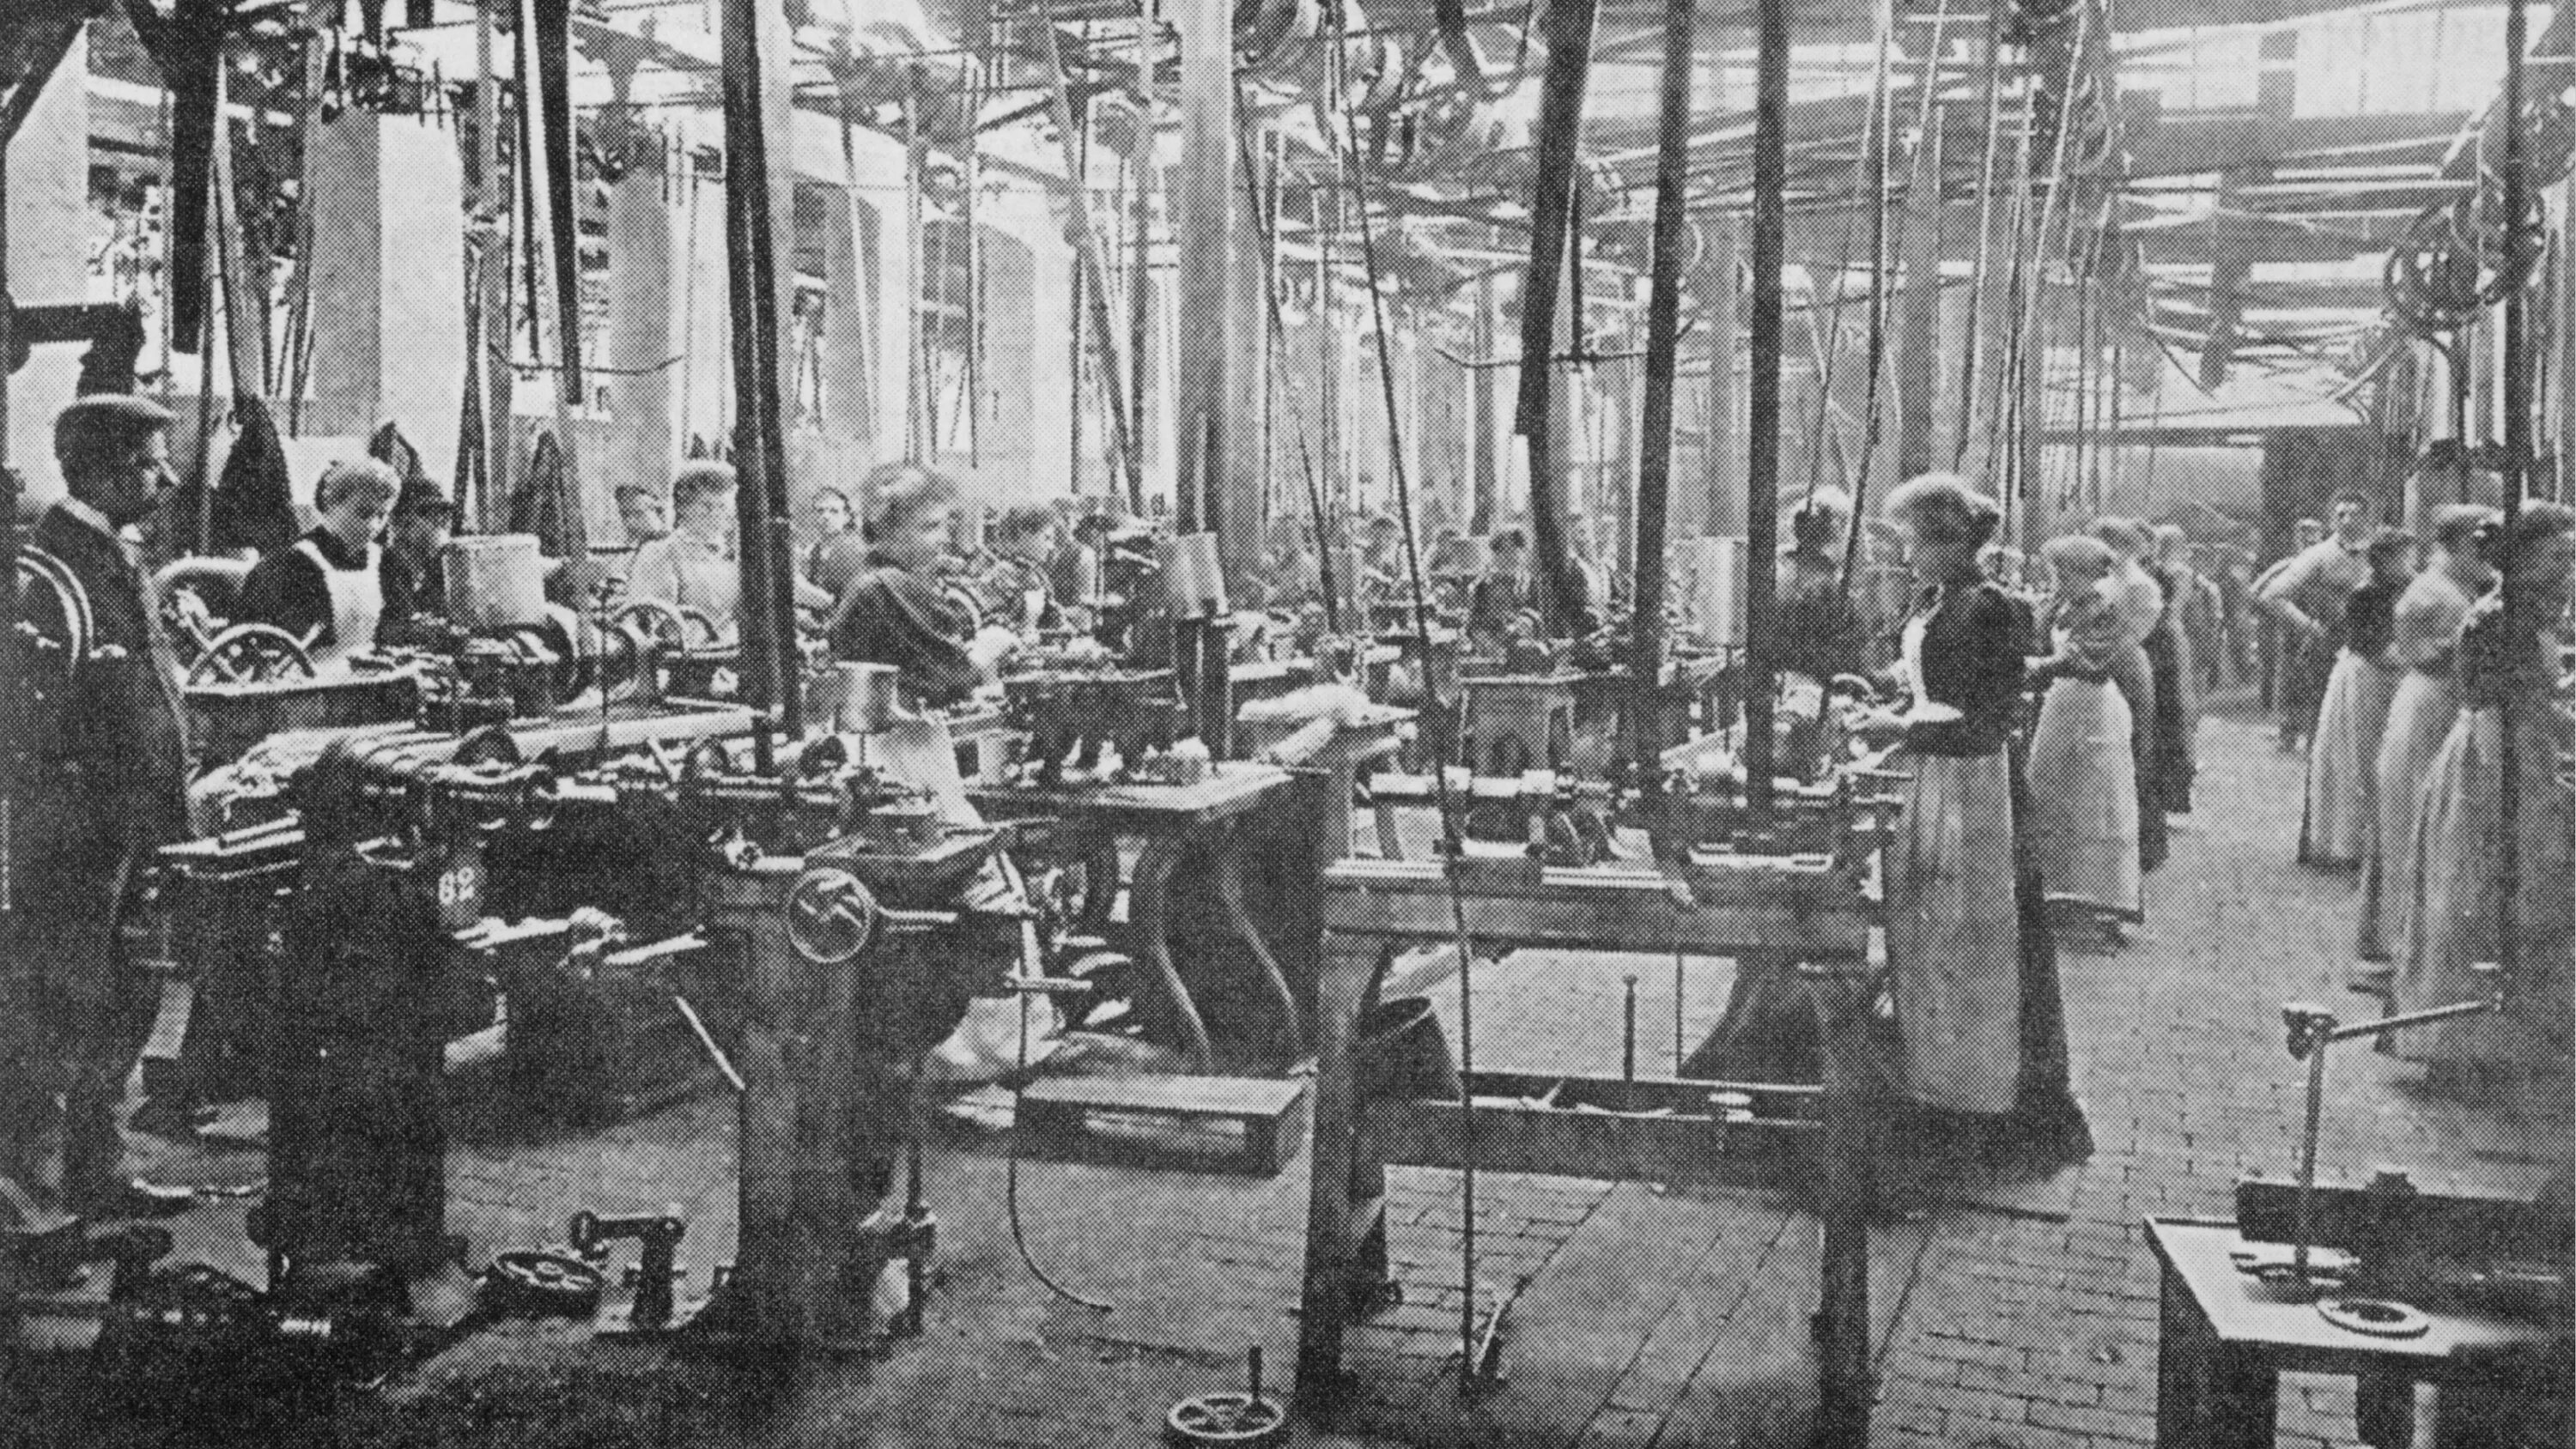 Работницы на ткацкой фабрике 19 век Англия. Ткацкая фабрика Великобритания 19 век. Ткацкая фабрика в России в 19 веке. Прядильная фабрика 19 века.